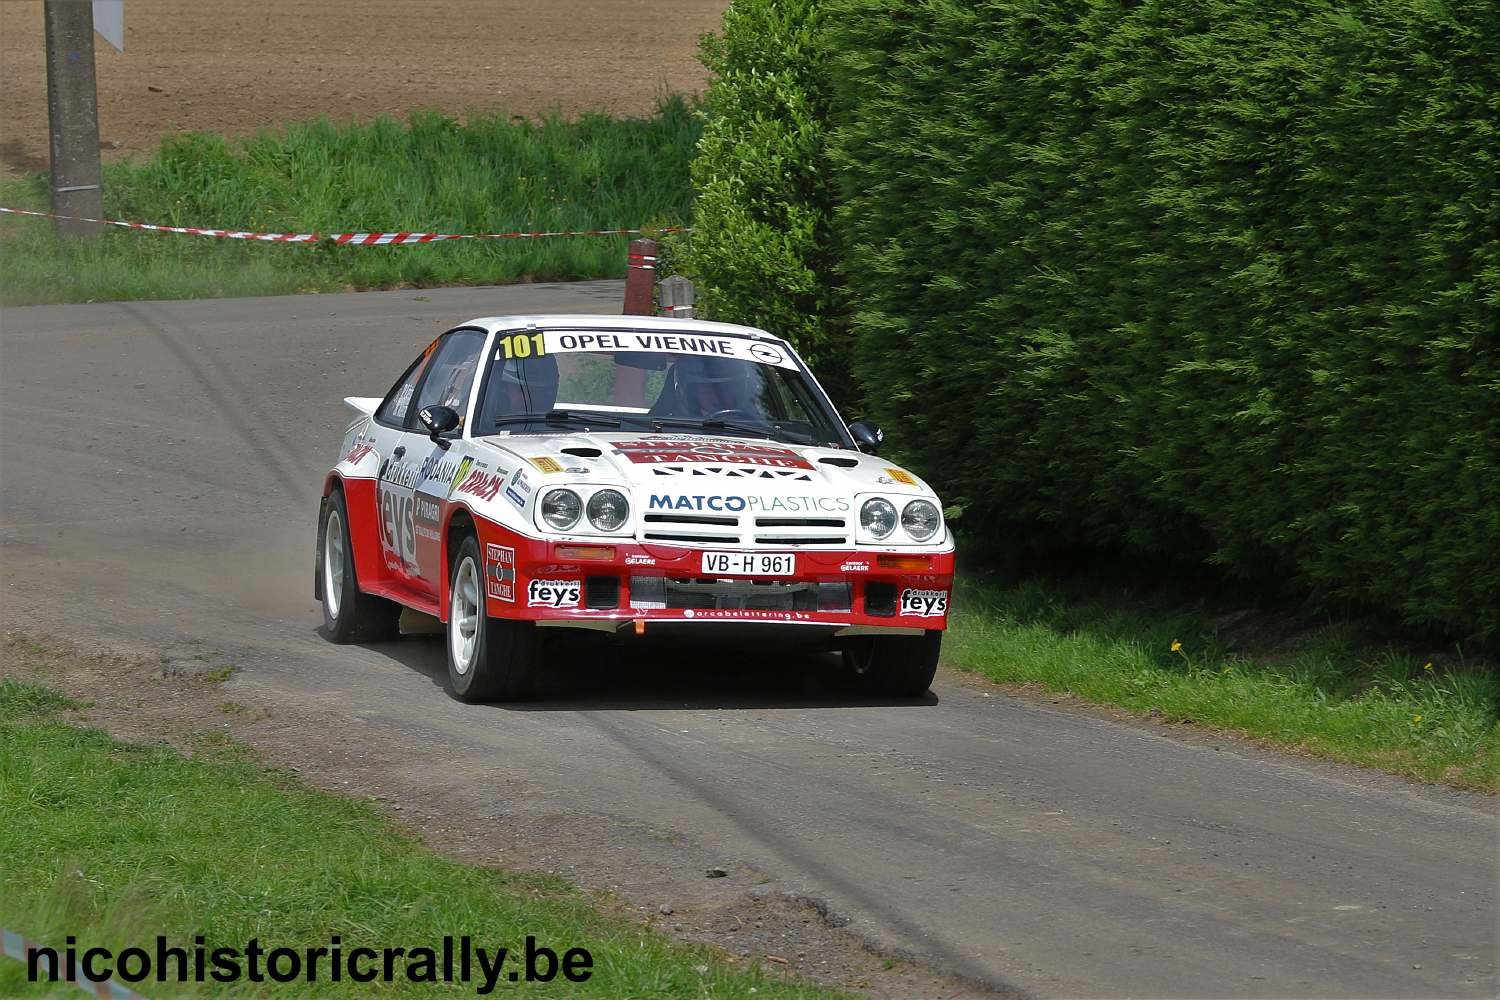 Paul Lietaer wint de Rally van Wallonie met een straatlengte voorsprong.